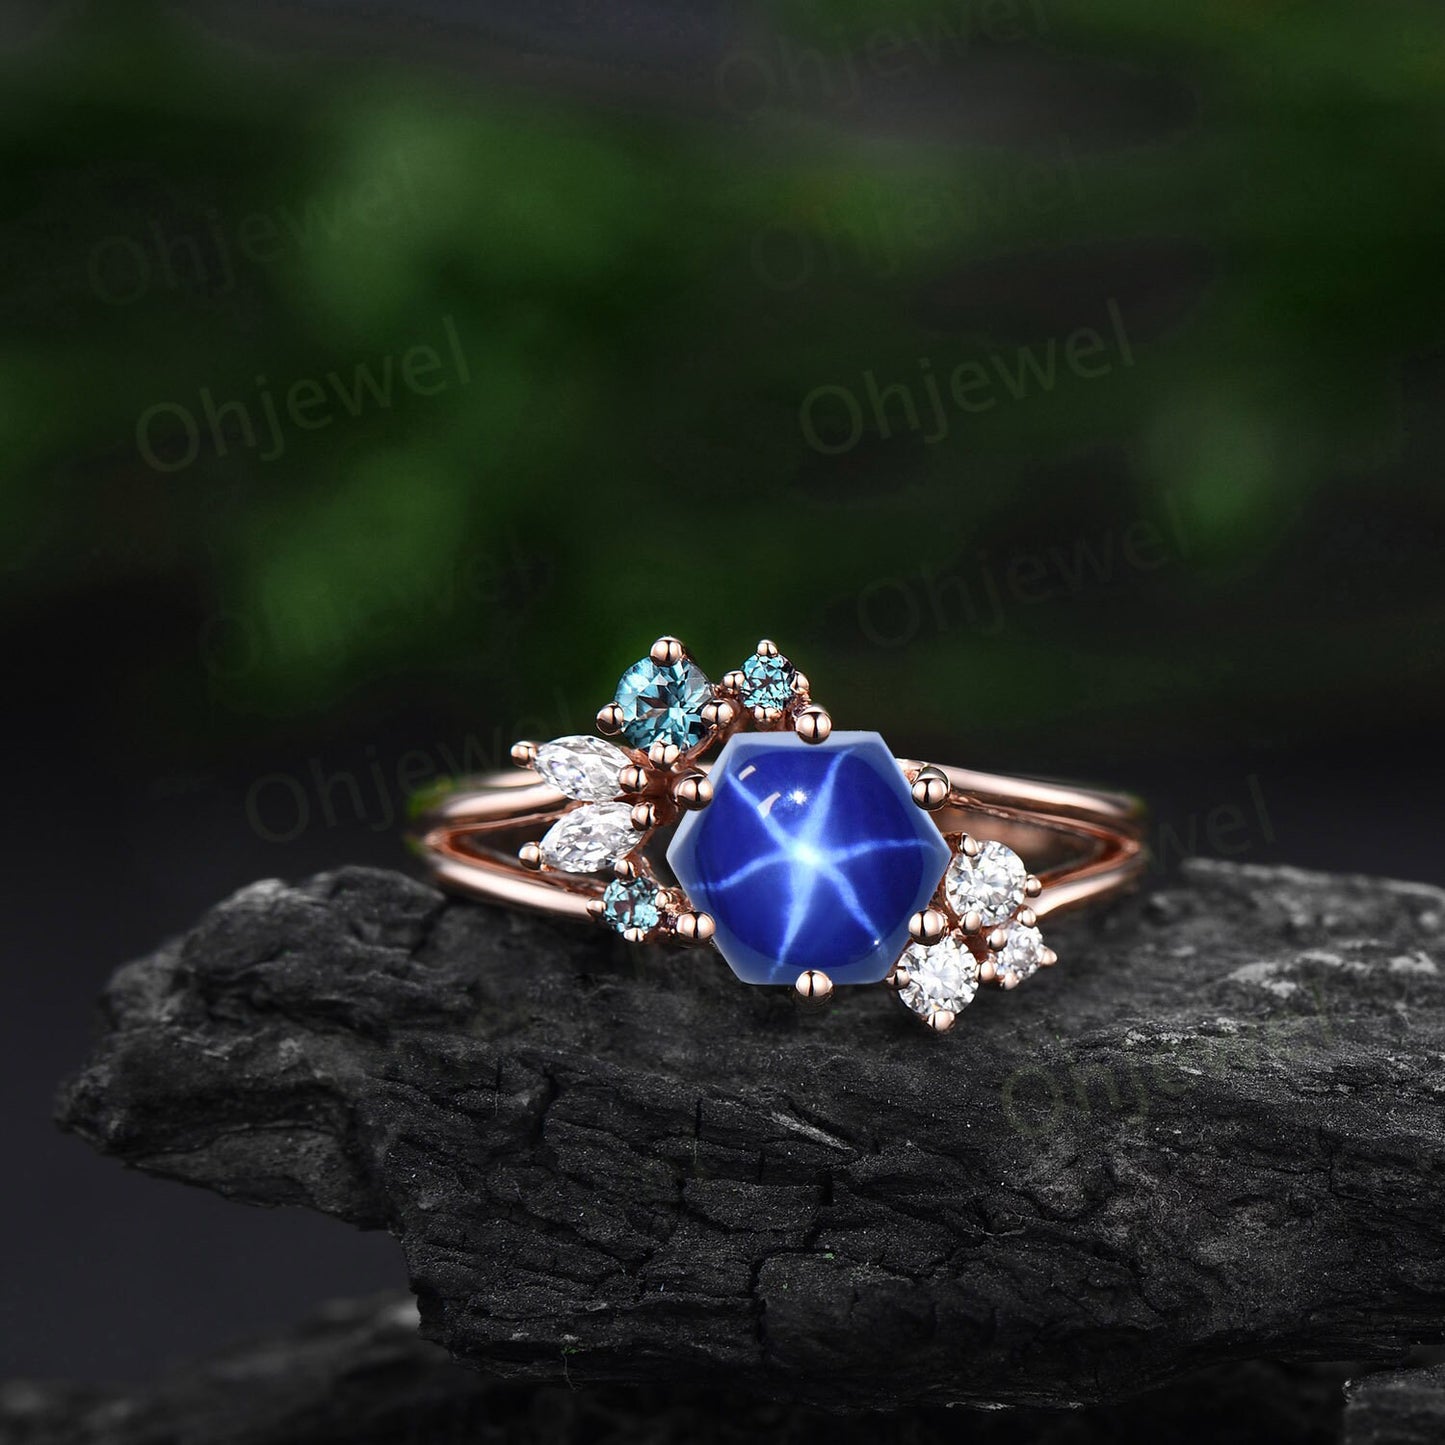 Hexagon blue star sapphire engagement ring rose gold silver cluster alexandrite ring 6 prong split shank diamond promise wedding ring women